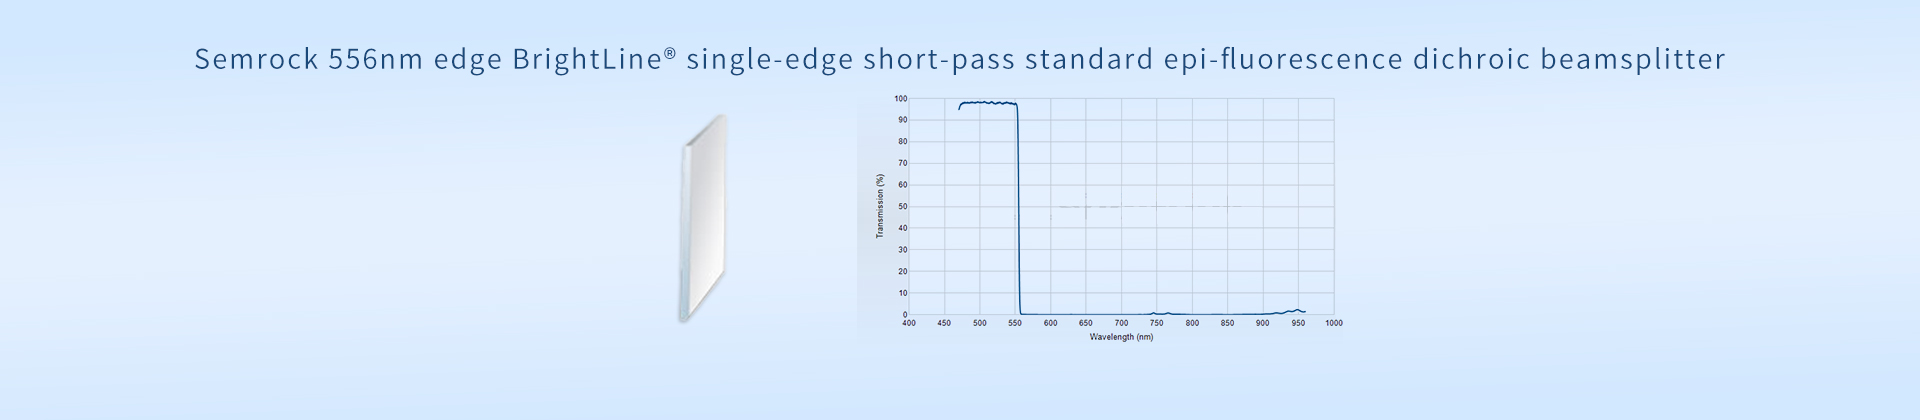 Semrock 556nm edge BrightLine® single-edge short-pass standard epi-fluorescence dichroic beamsplitter